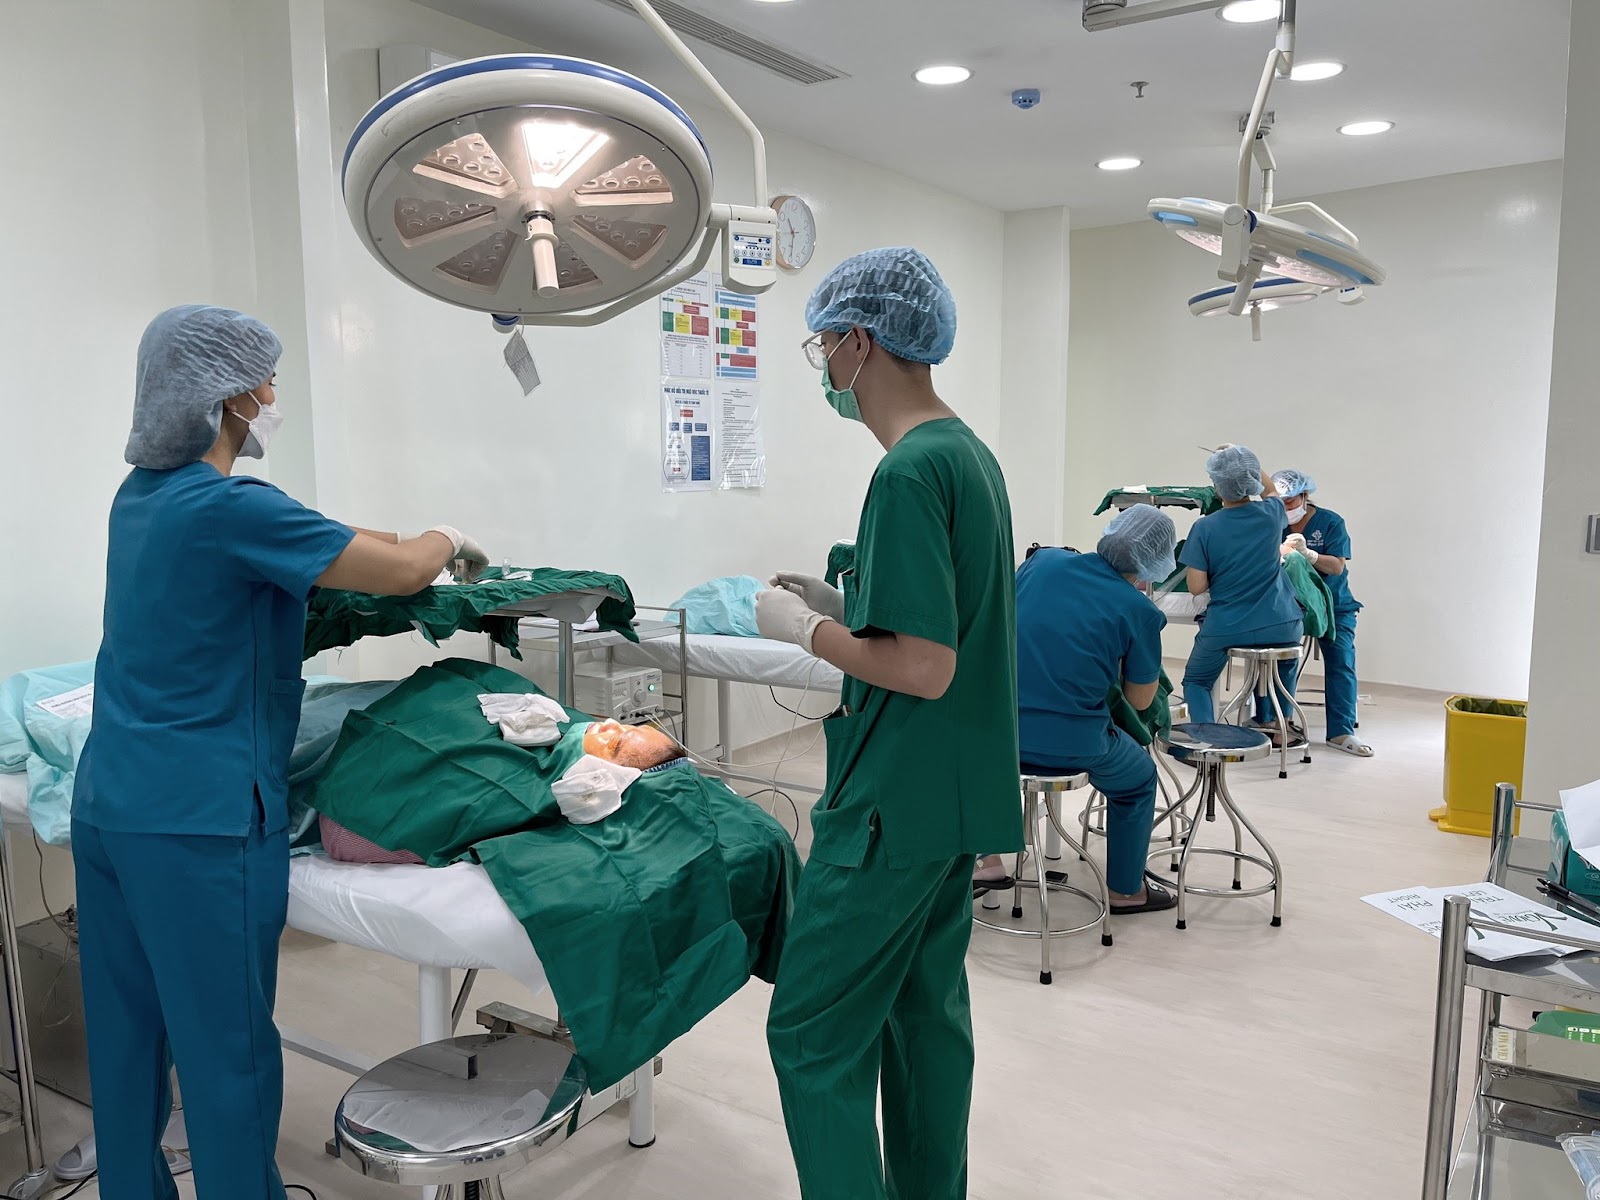 Sở hữu đội ngũ Y bác sĩ có trình độ chuyên môn cao, giàu kinh nghiệm hàng đầu tại Việt Nam và Hàn Quốc chính là một trong những điểm nổi bật chỉ có tại Ngọc Phú.